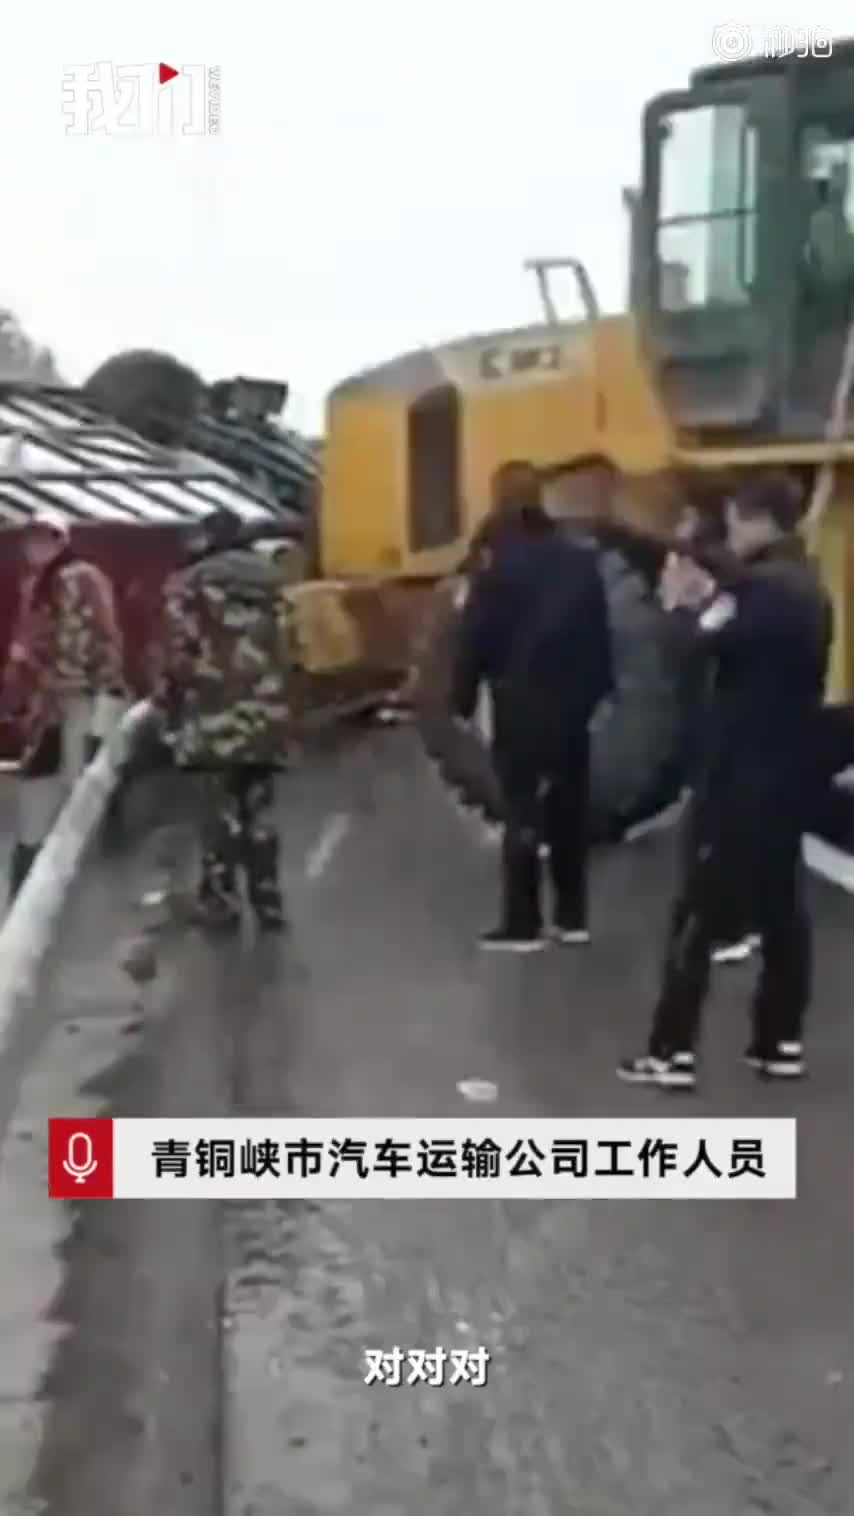 陕西靖边大巴车高速翻车 伤亡乘客多为公职人员